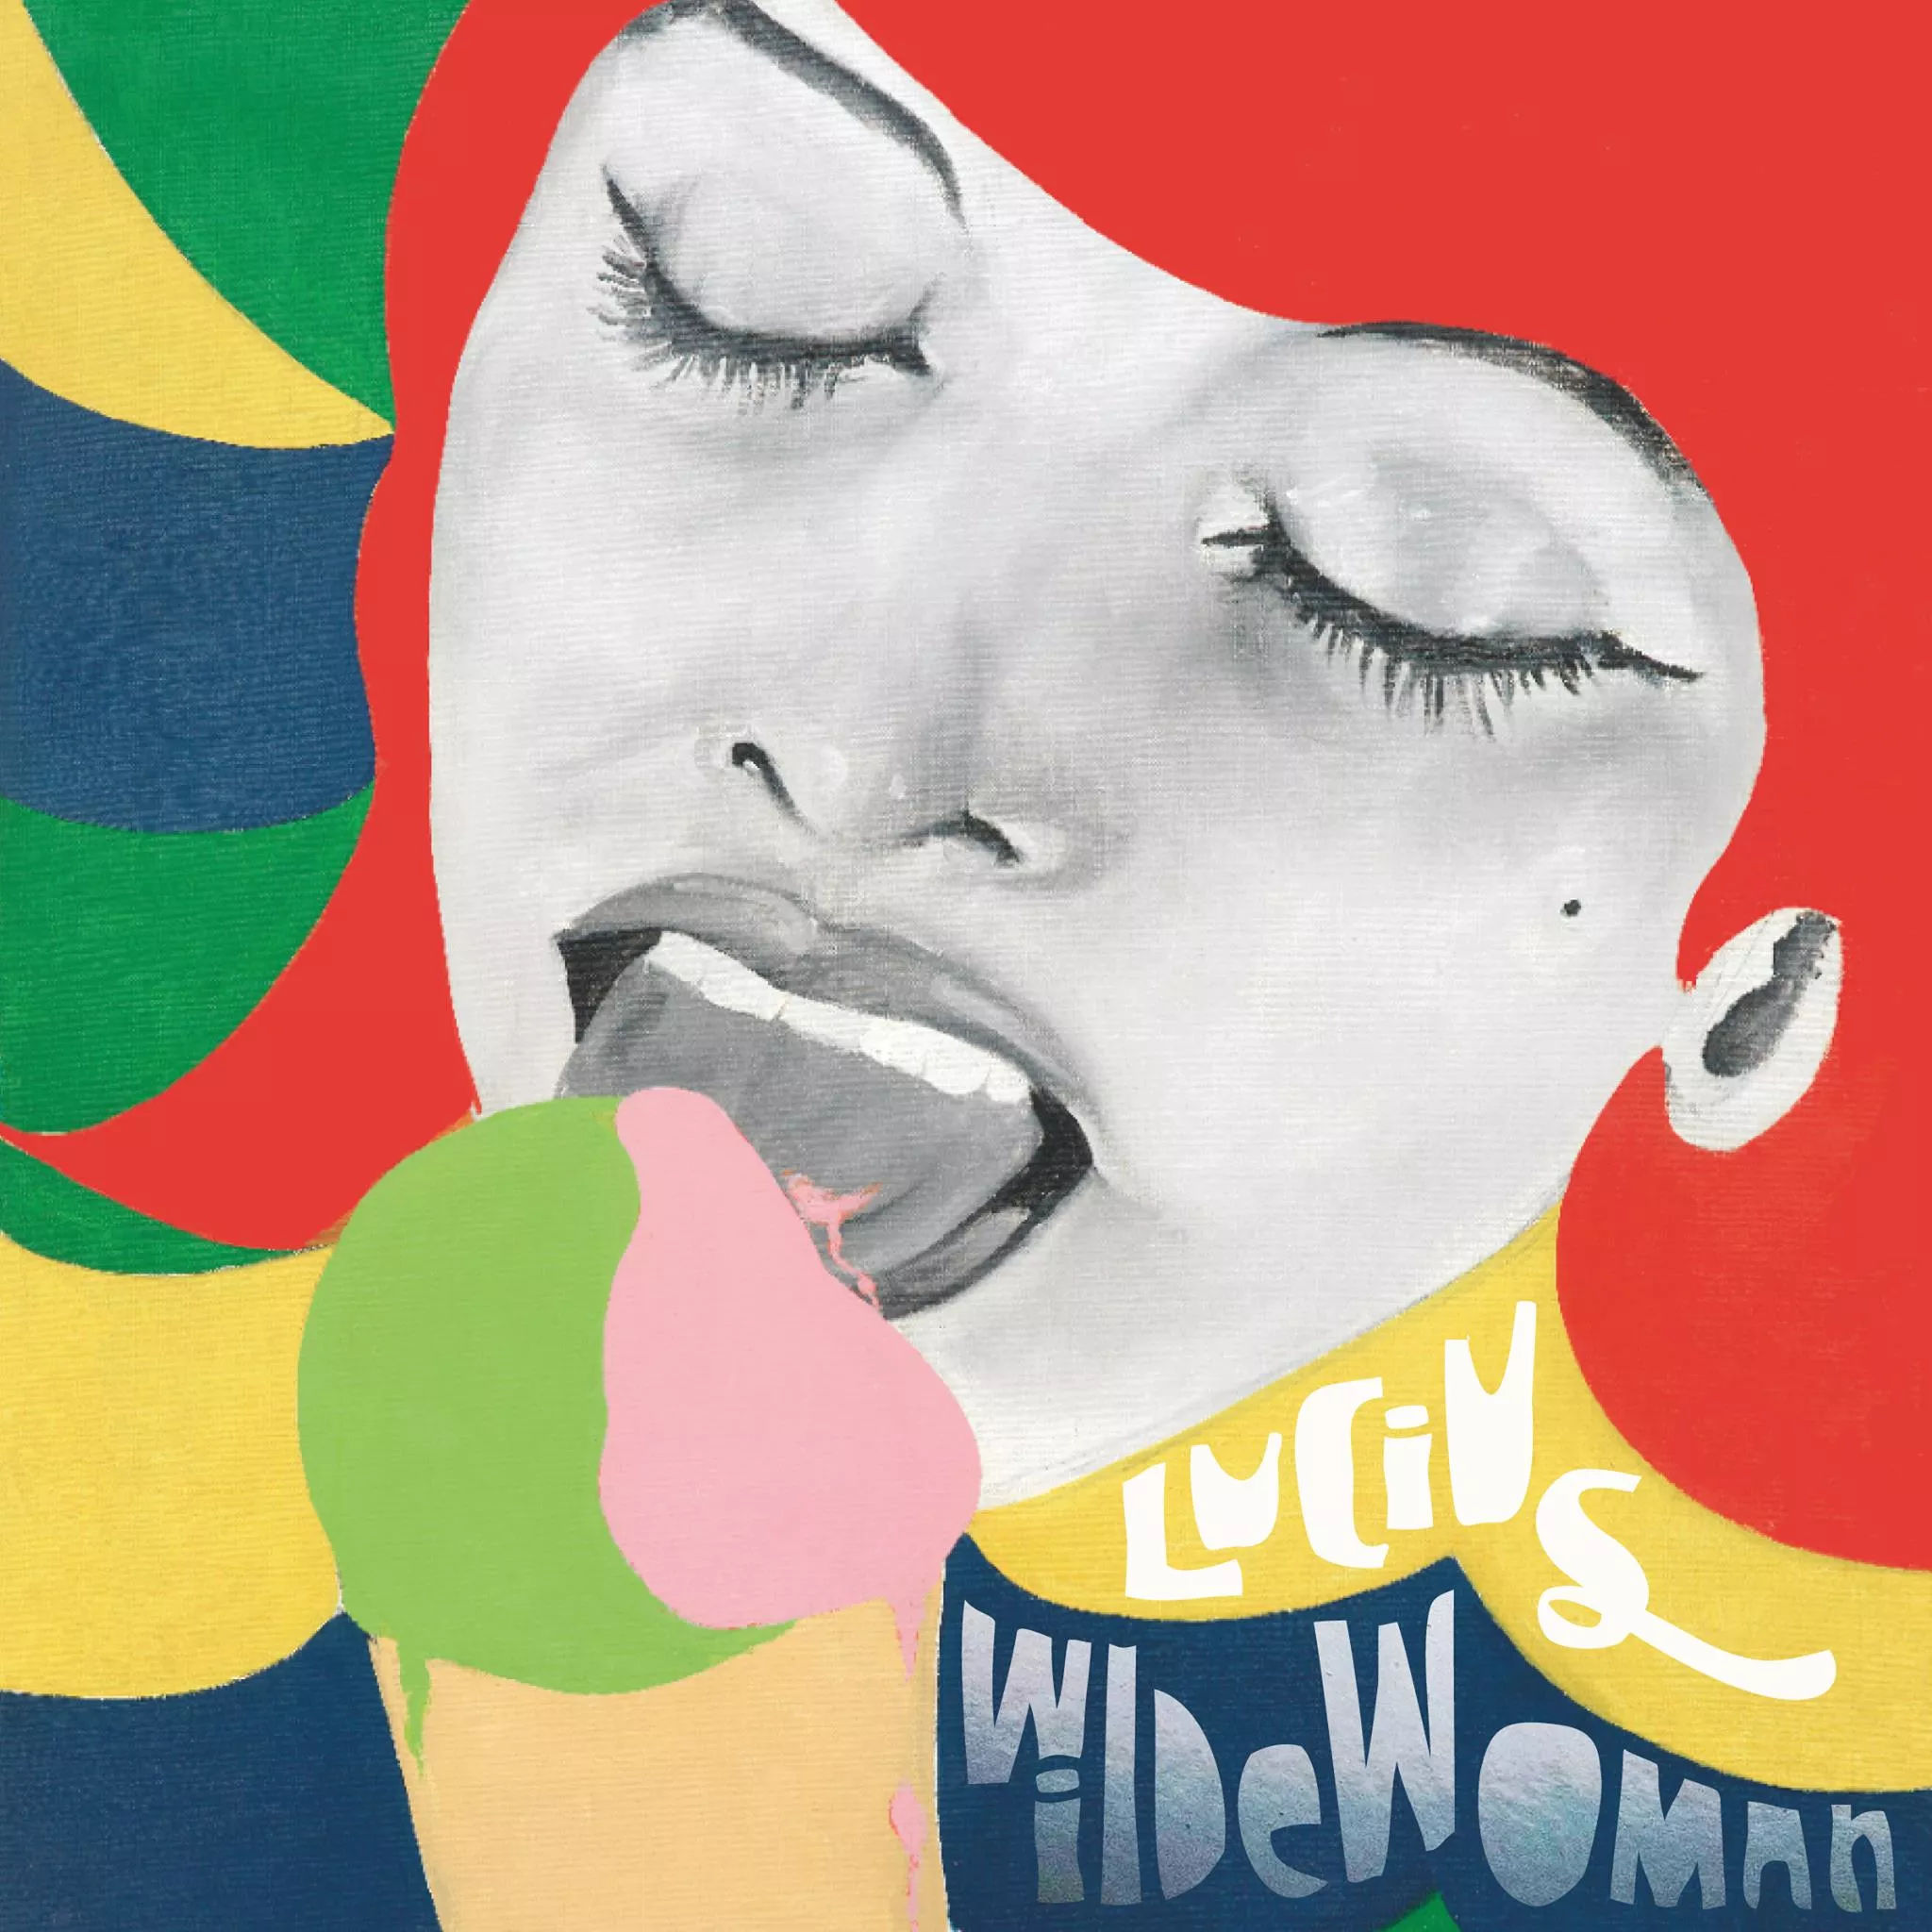 Wildewoman - Lucius